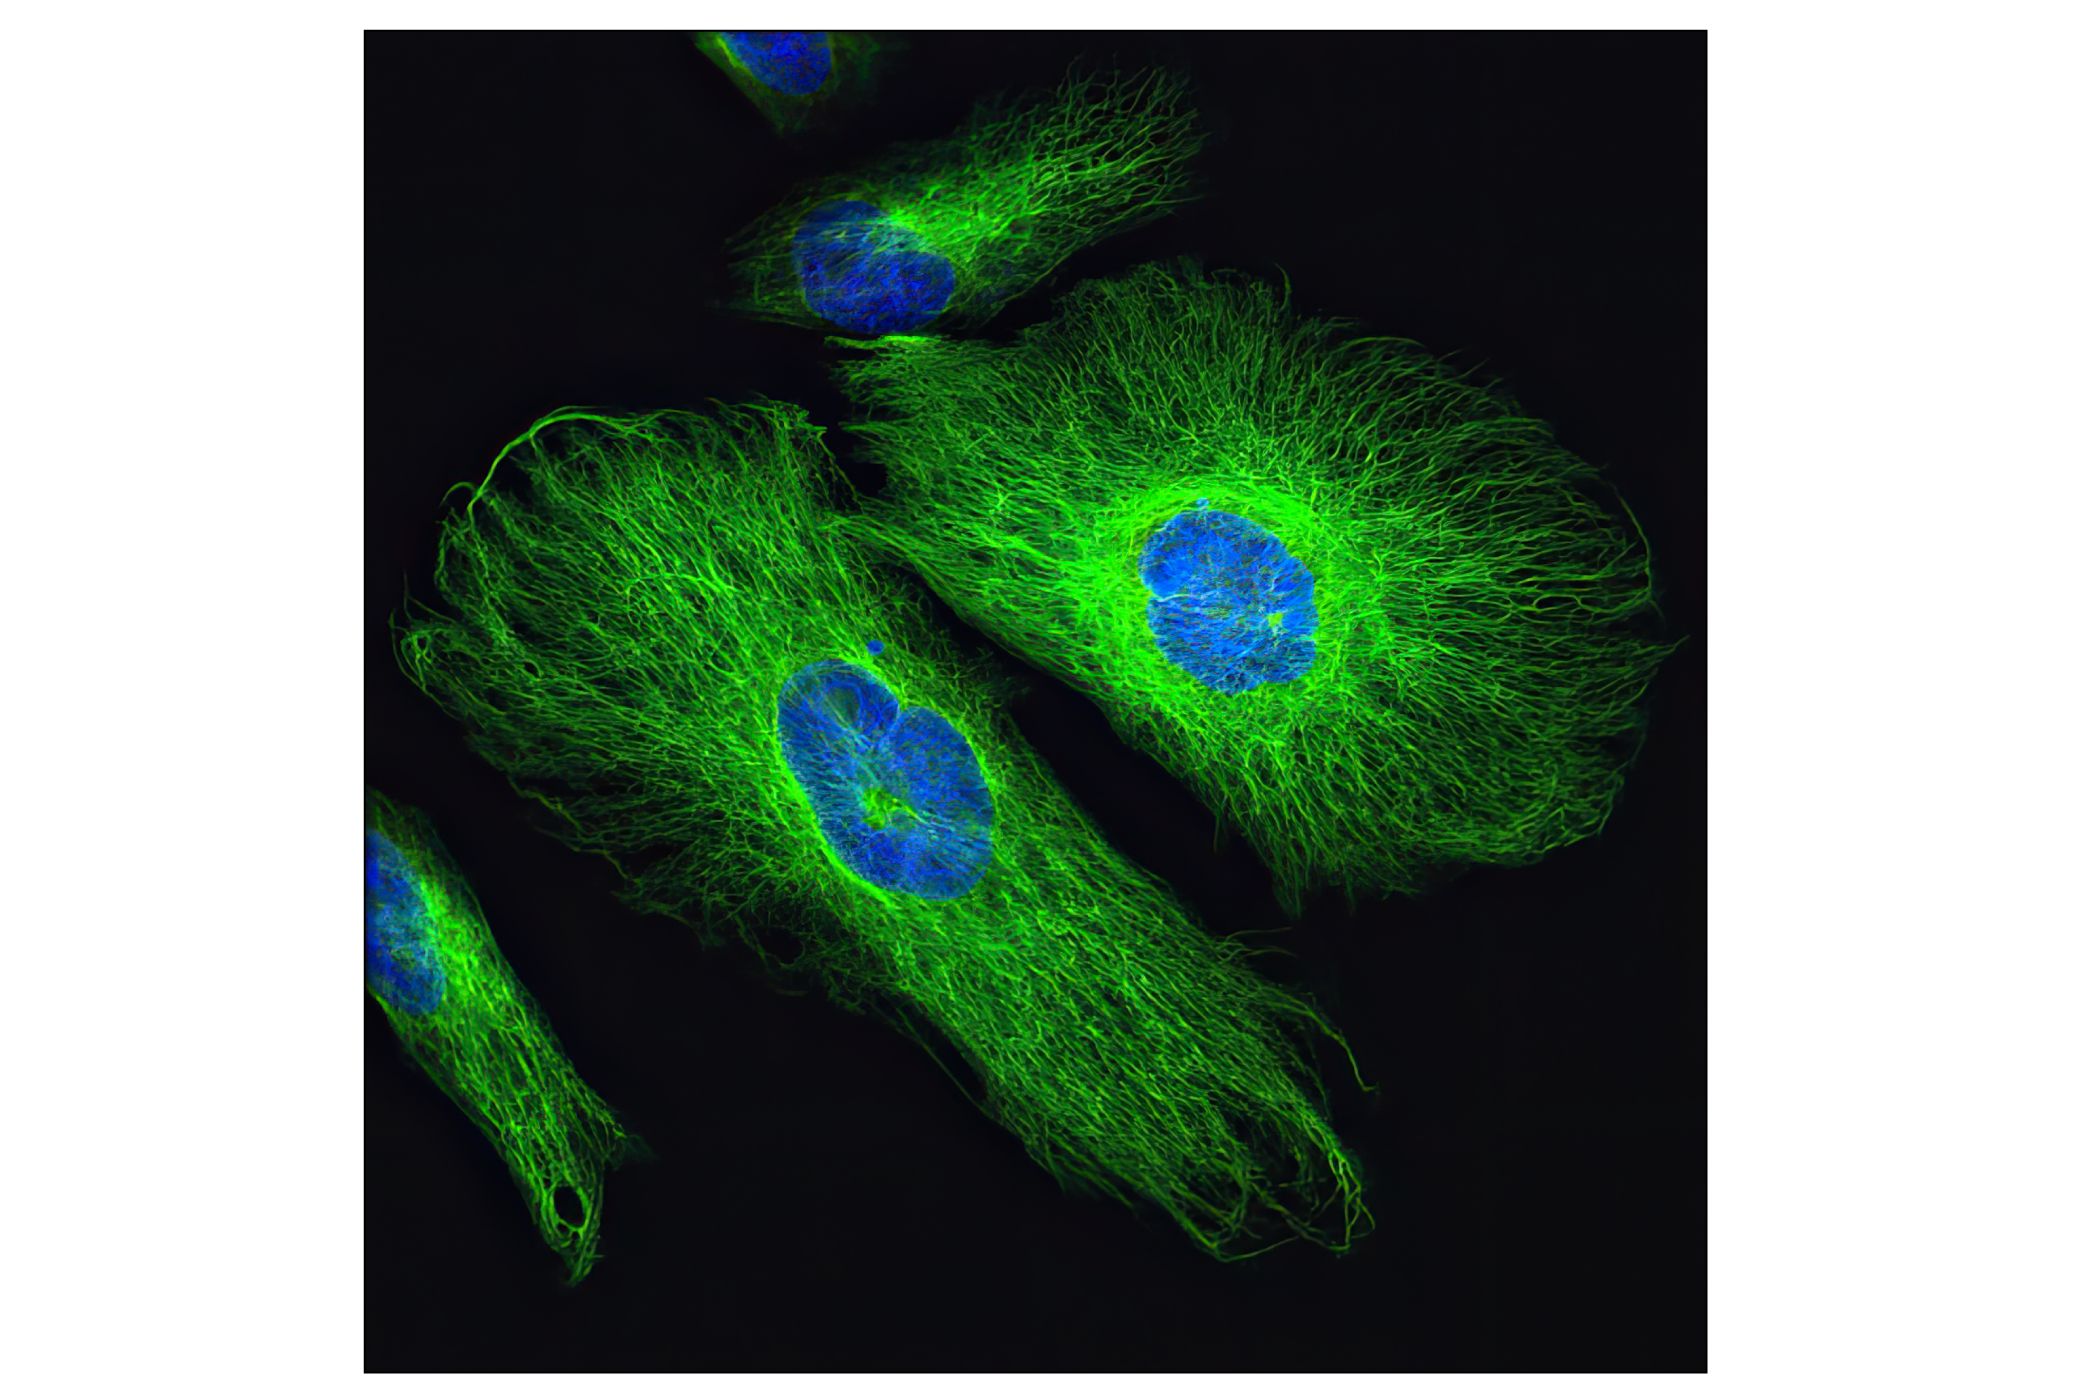  Image 41: Cell Fractionation Antibody Sampler Kit